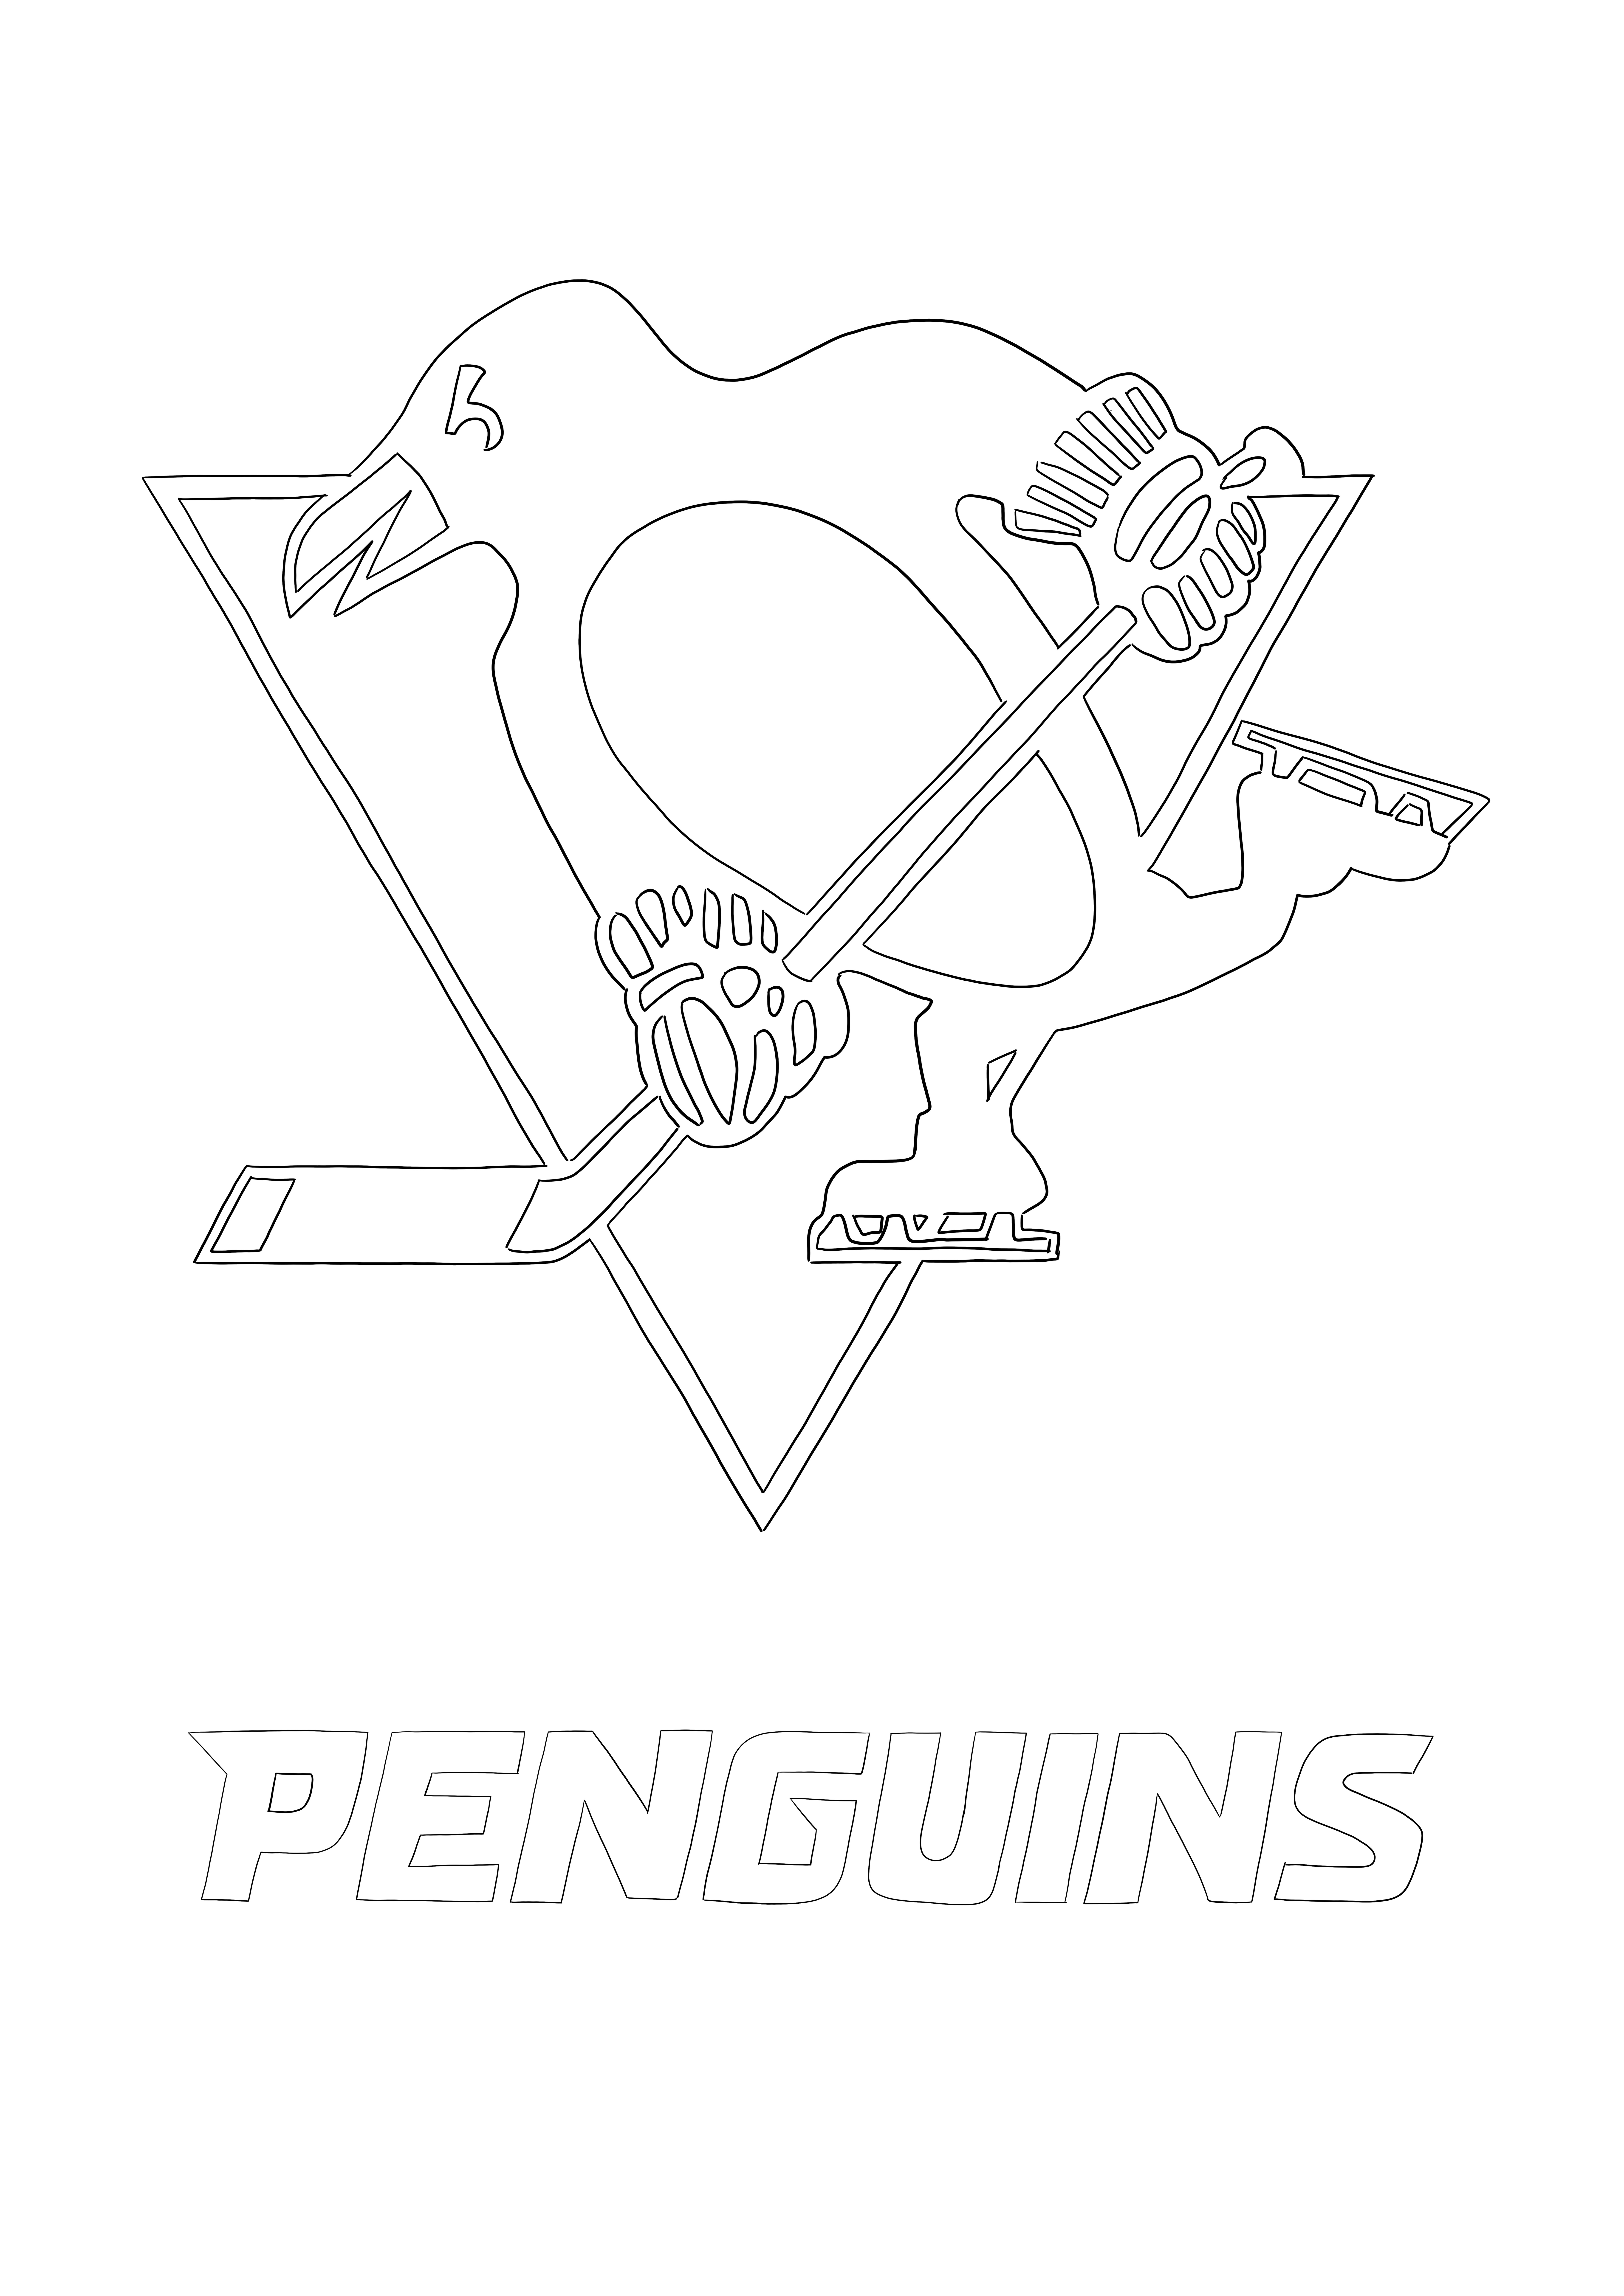 Logo des Penguins de Pittsburgh image gratuite à télécharger et à colorier pour les enfants